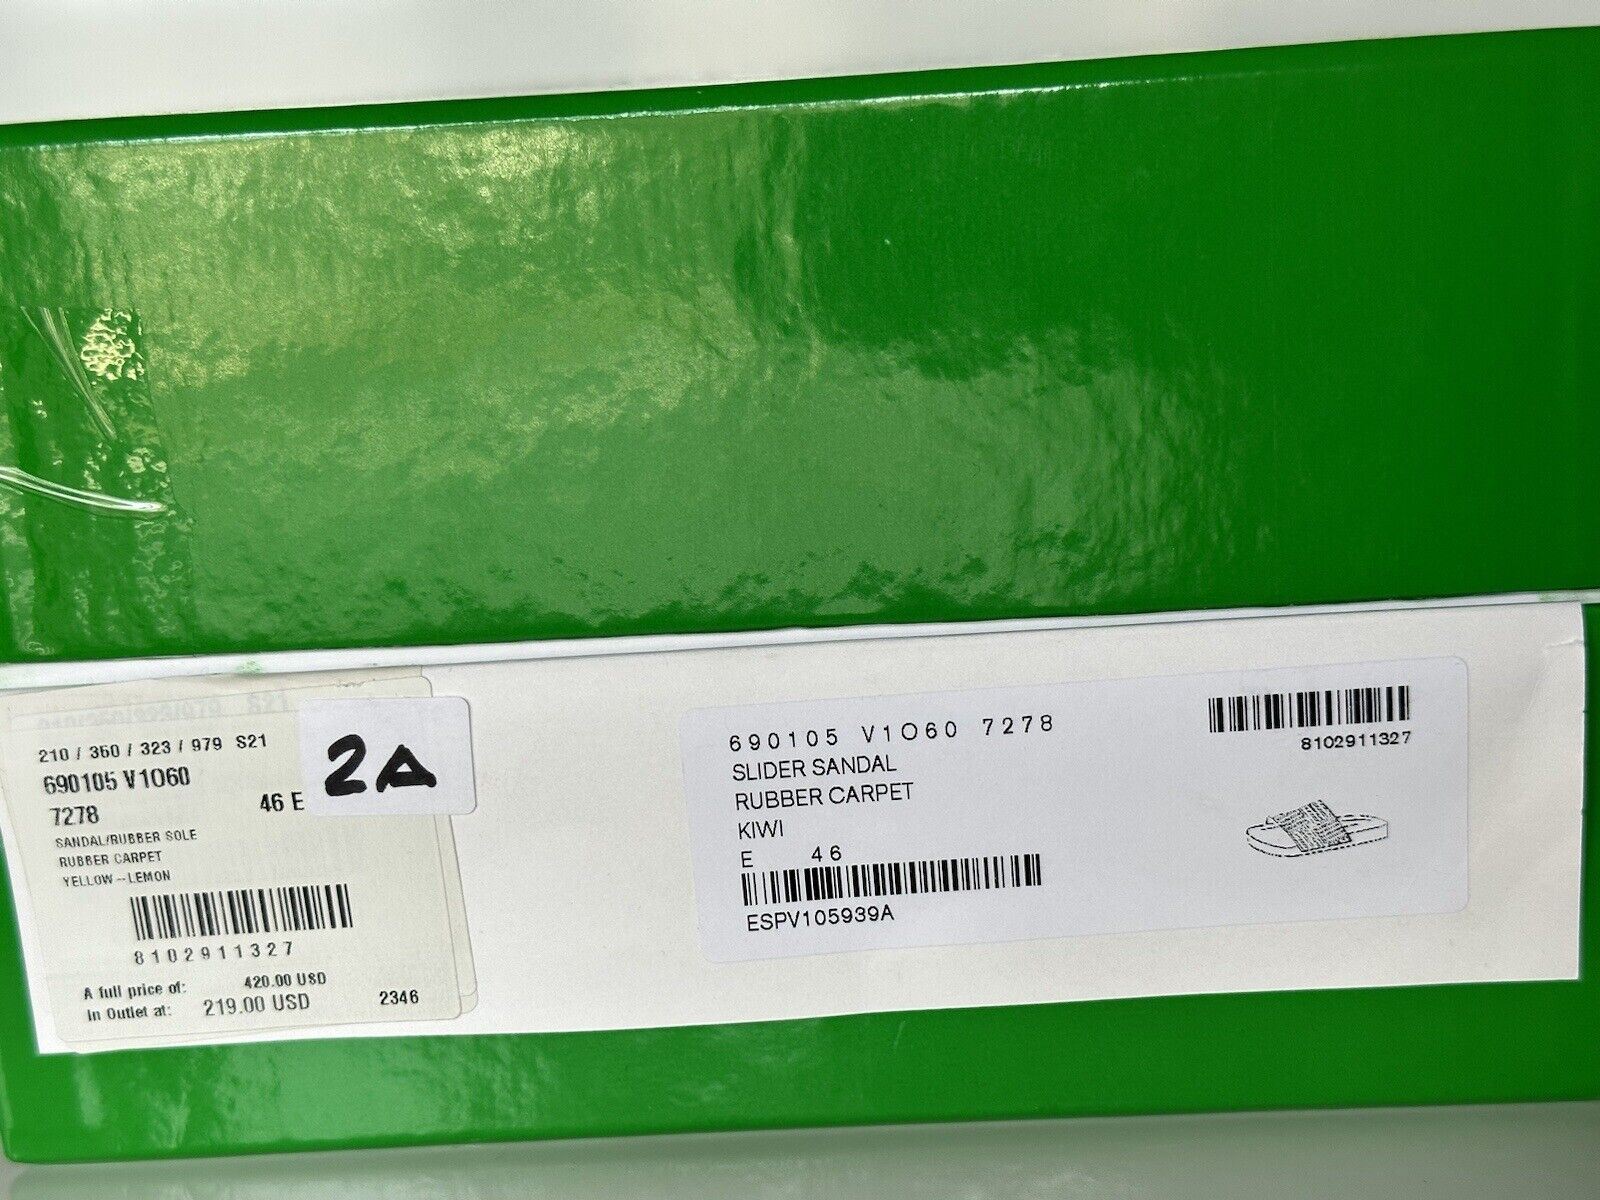 Мужские резиновые шлепанцы Bottega Veneta стоимостью 420 долларов США 13 США (46 евро) 690105